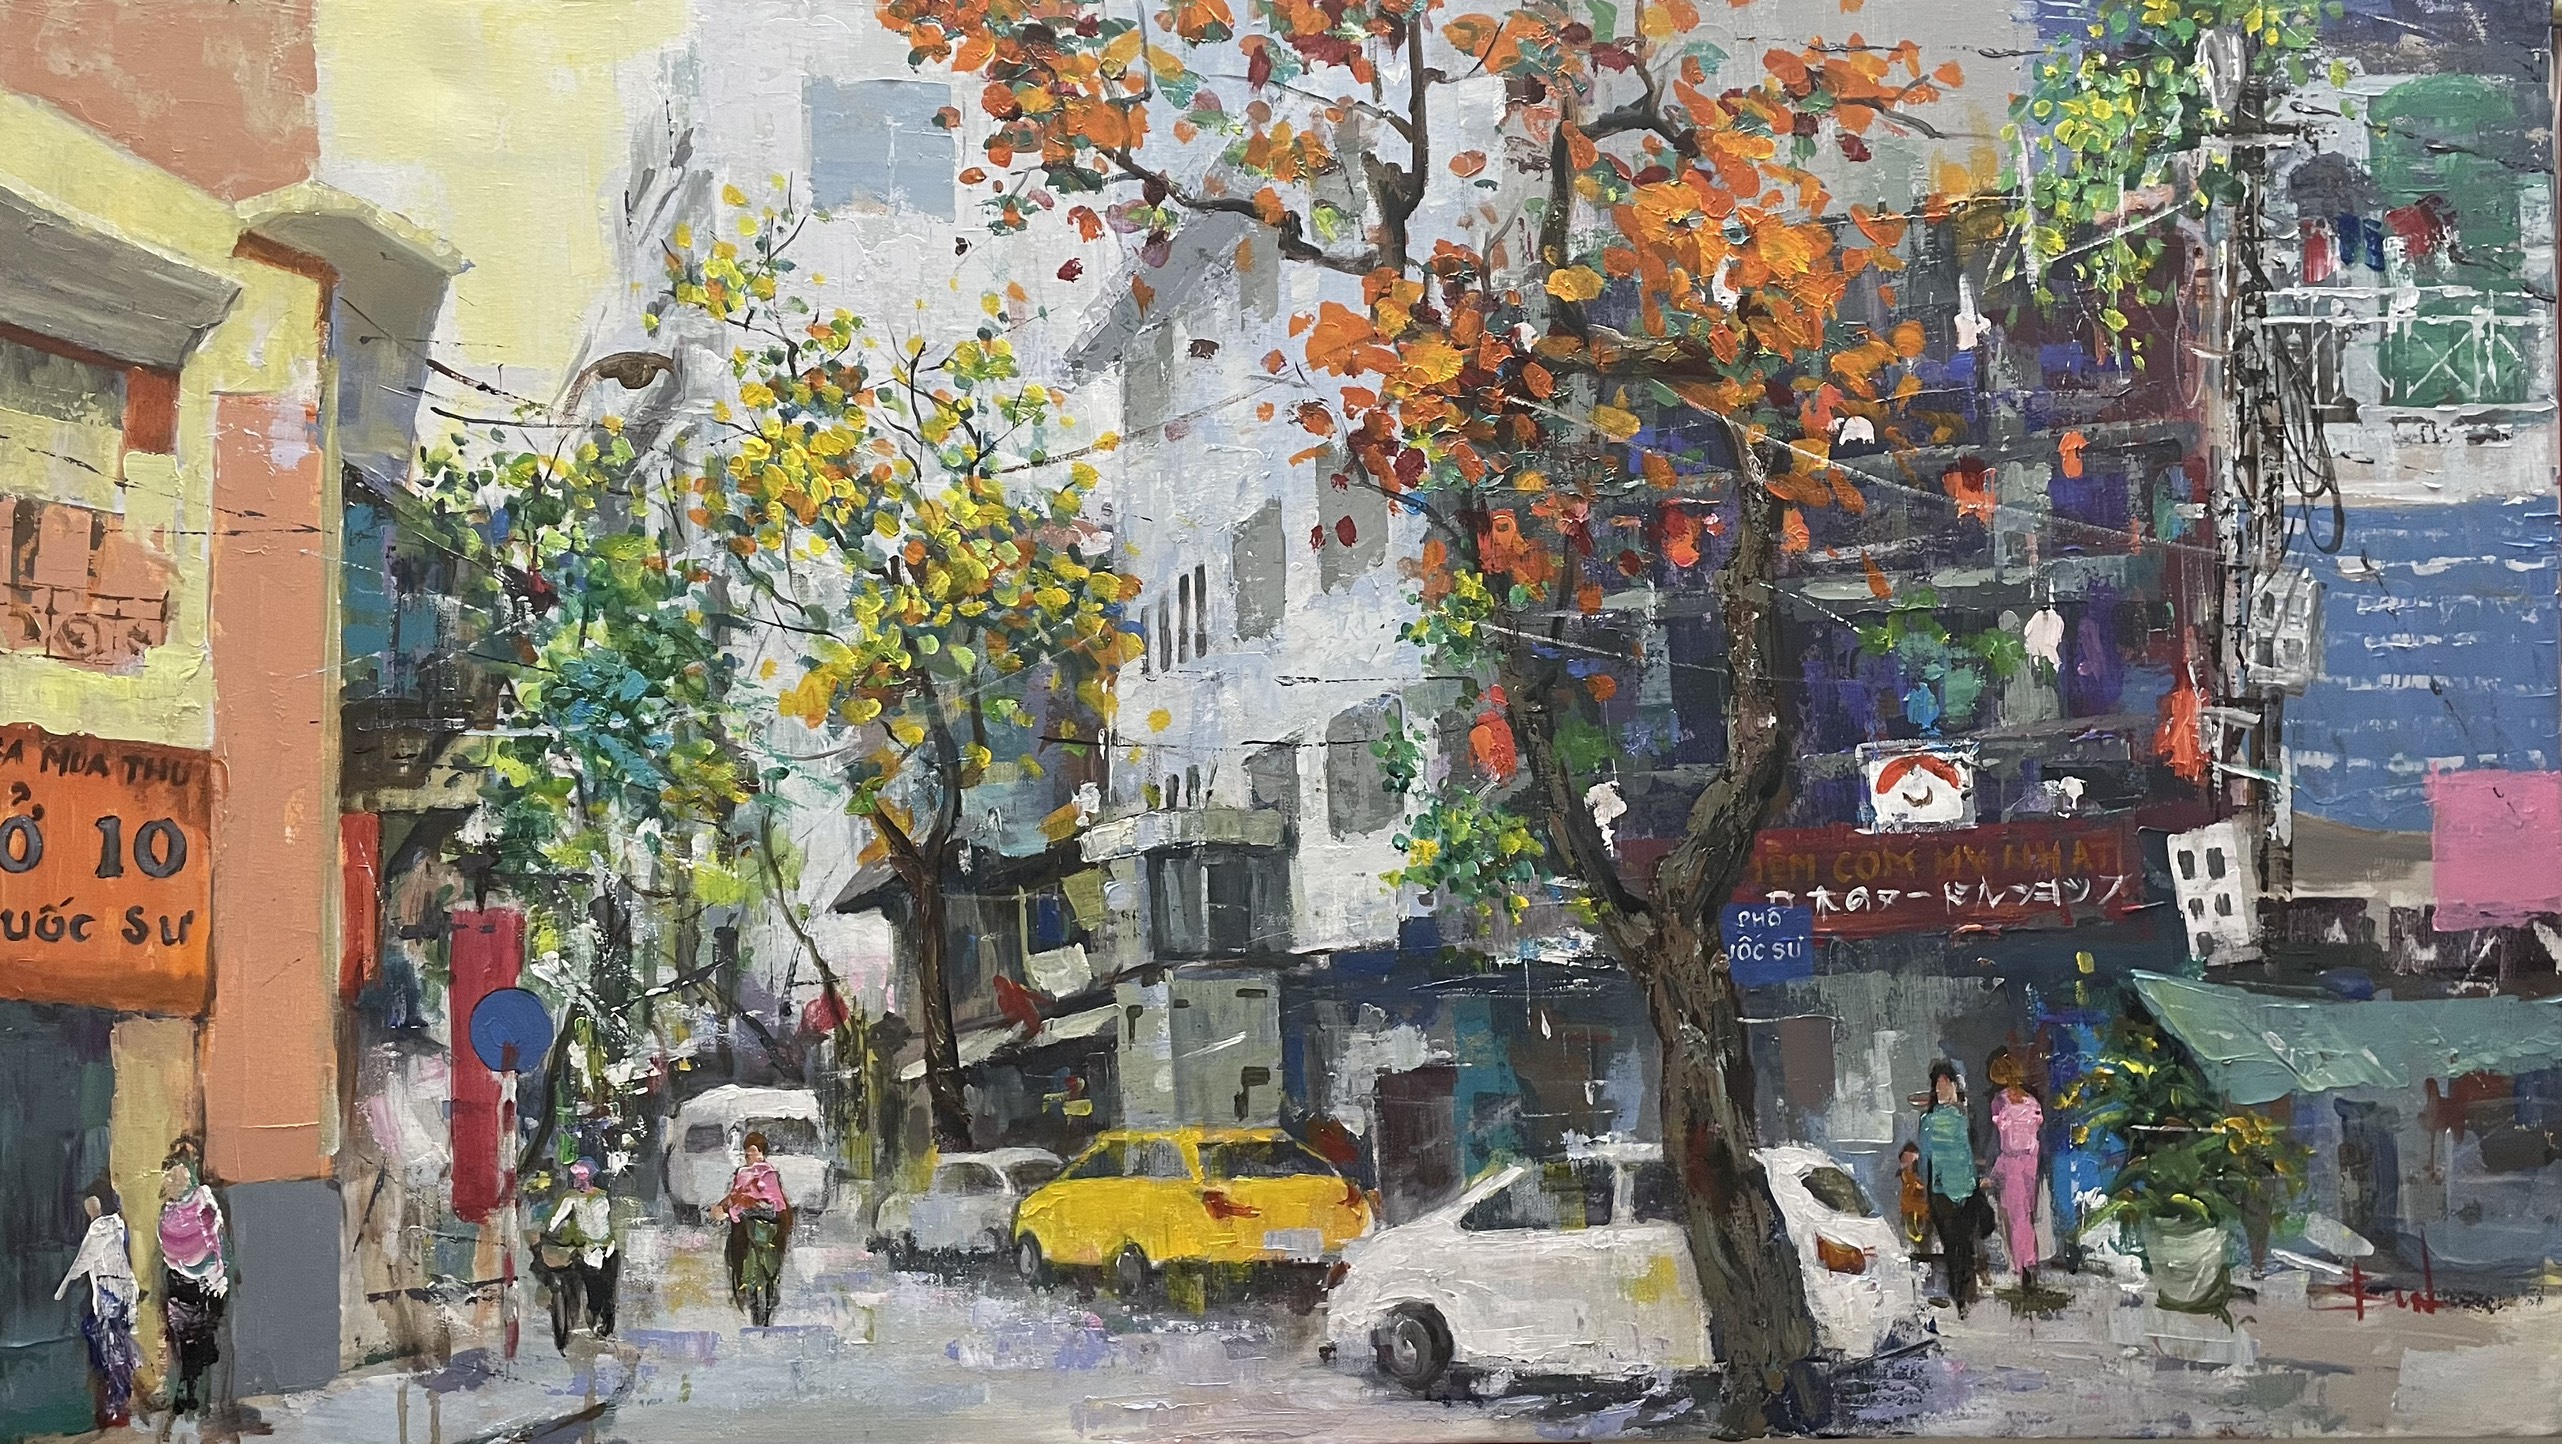 Ly Quoc Su Street - Đỗ Văn Bình